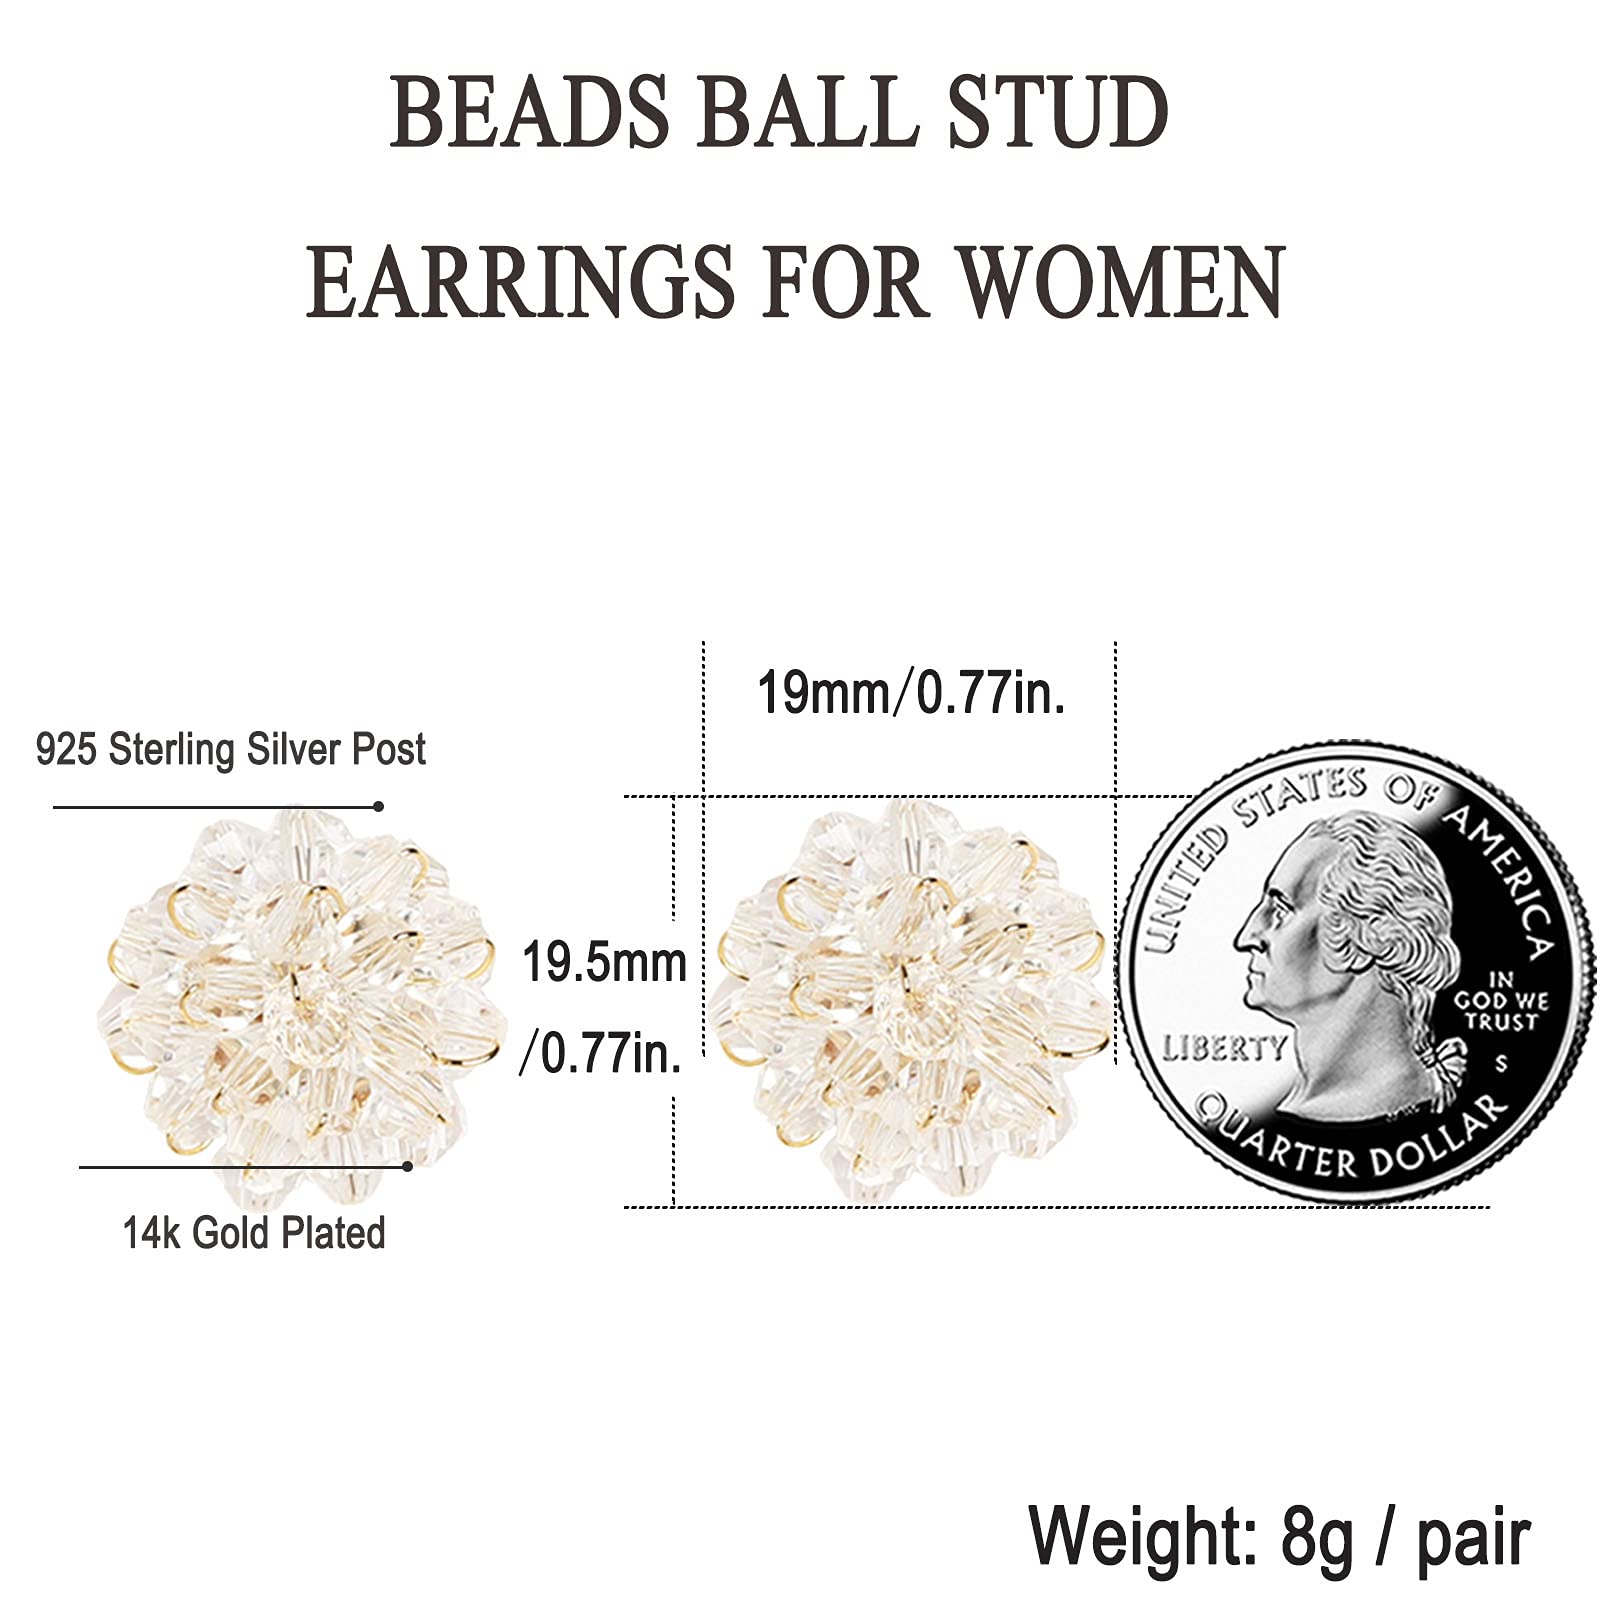 Crystals Drop Dangle Earrings for Women Girls Blue Heart Princess 18K Gold Sterling Silver Cz Tassel Stud Flower Boho